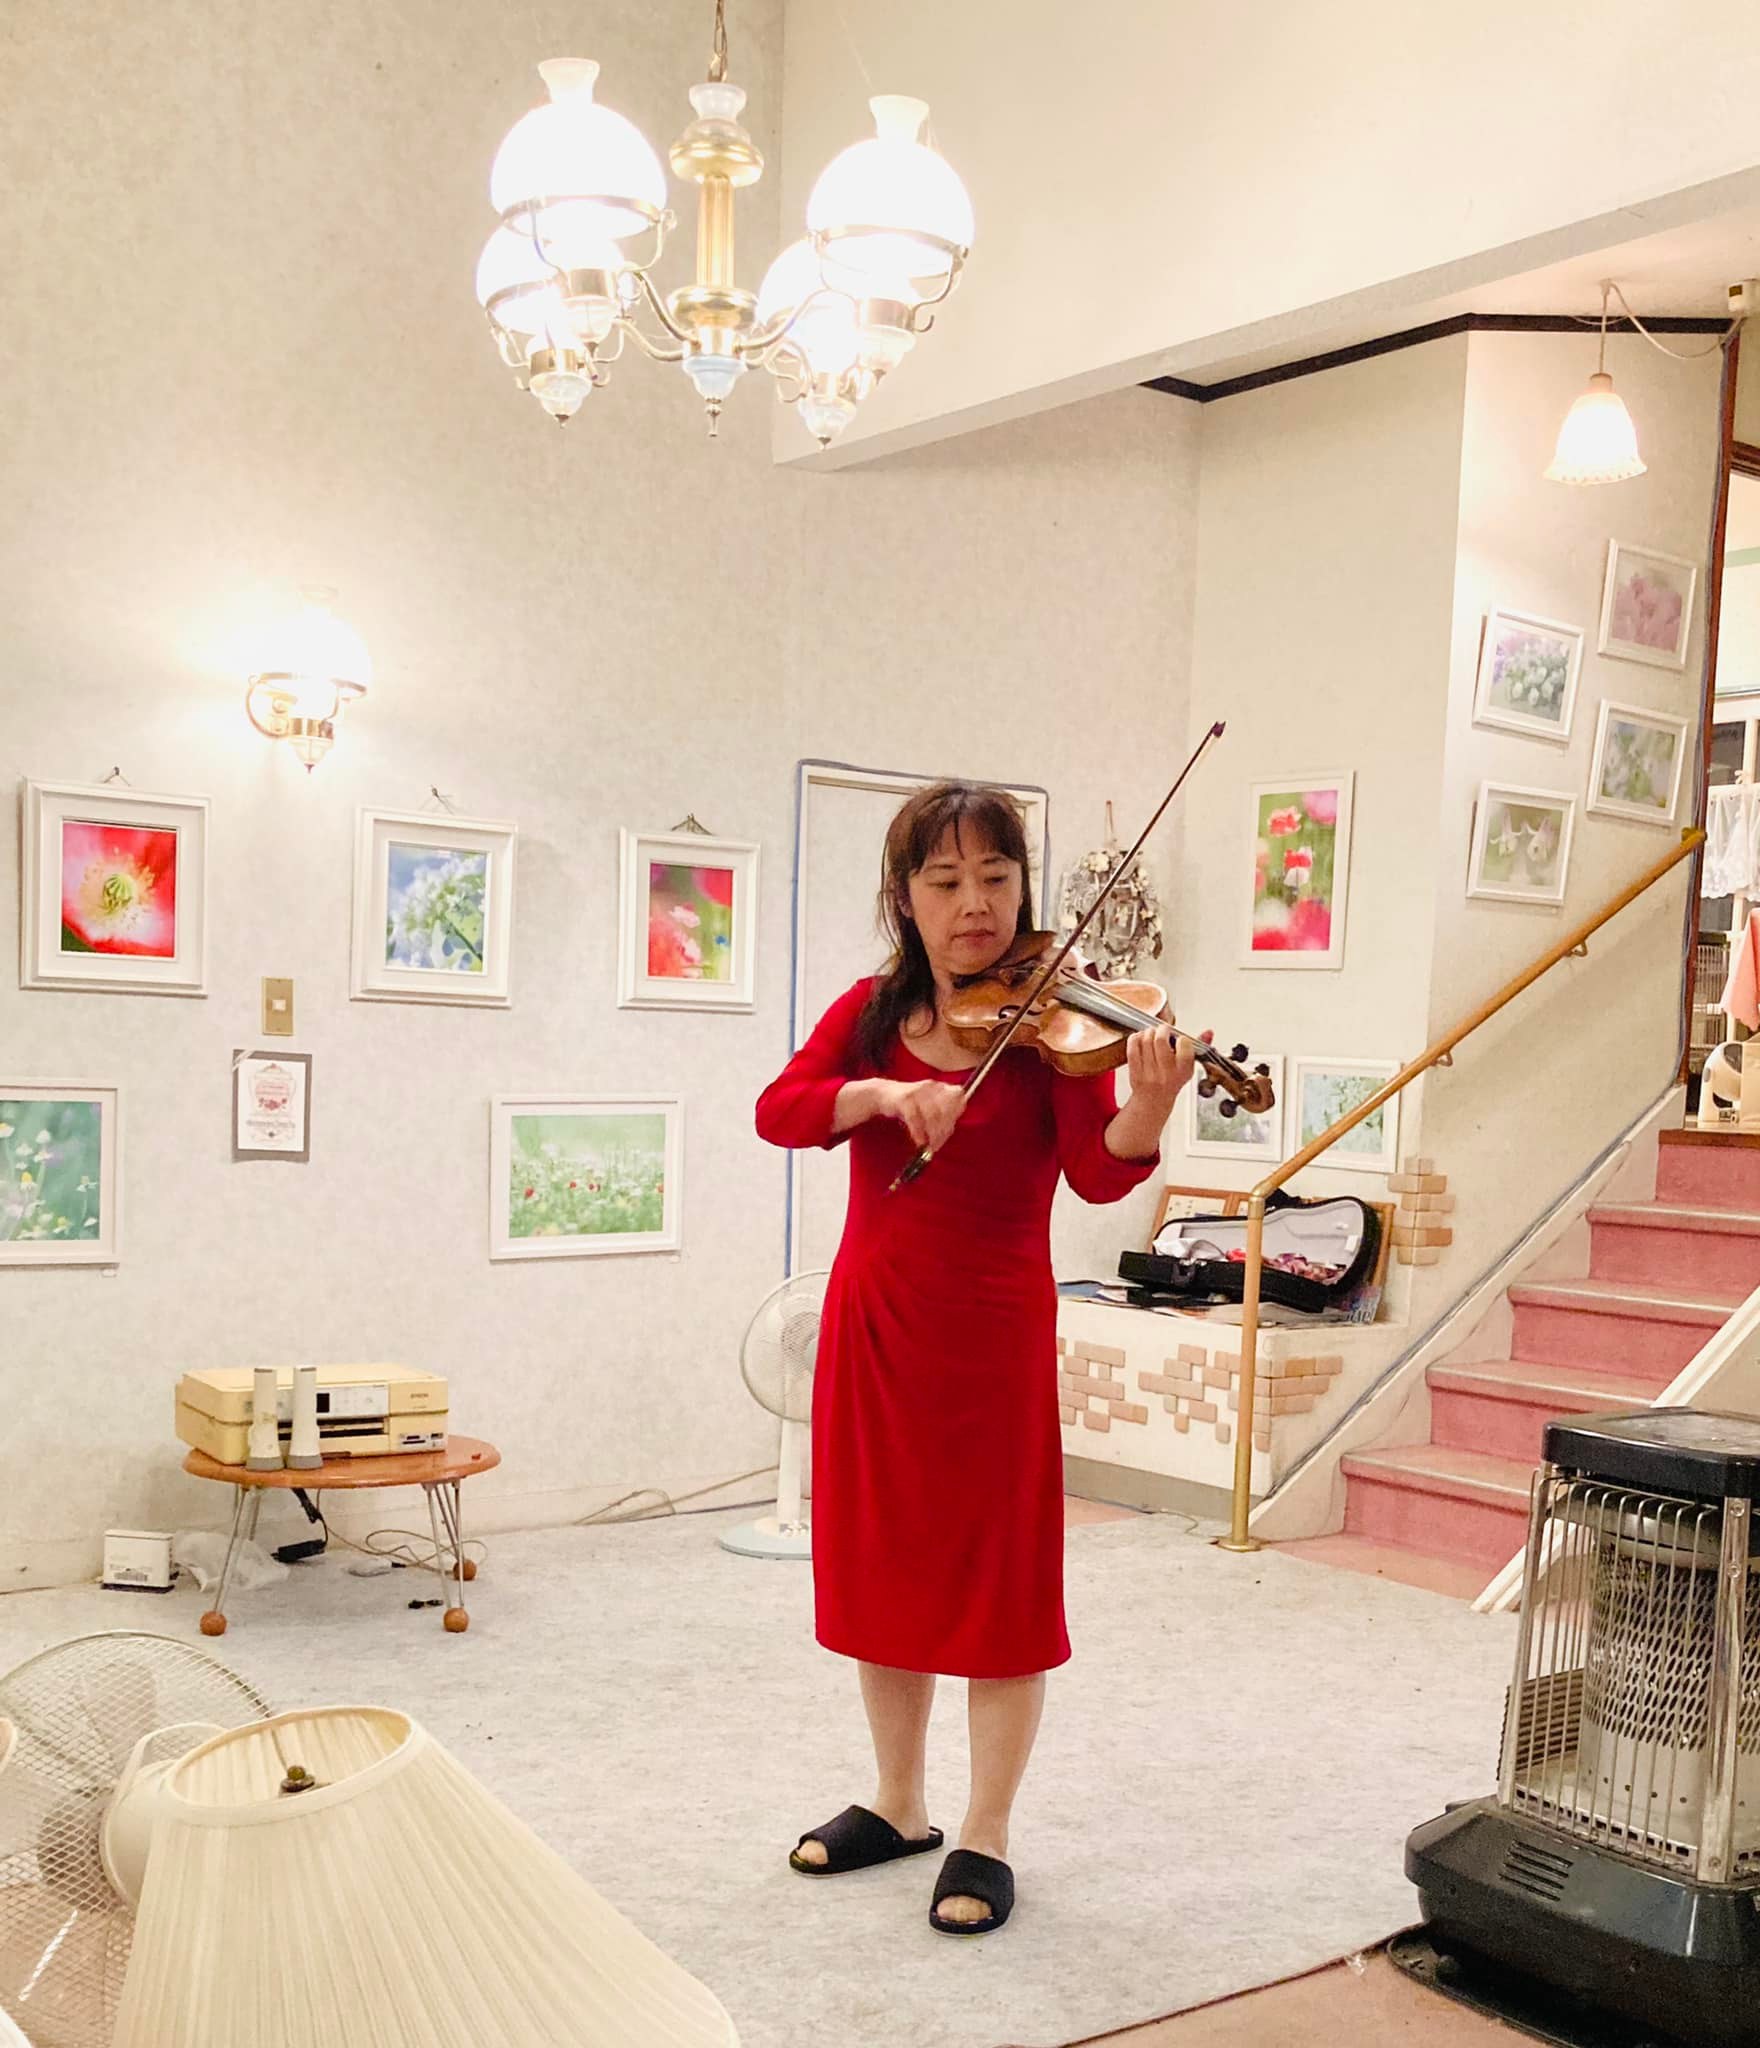 6/19 洋風民宿「こころ」にて 高橋真珠 さんの vnミニコンサートがありました